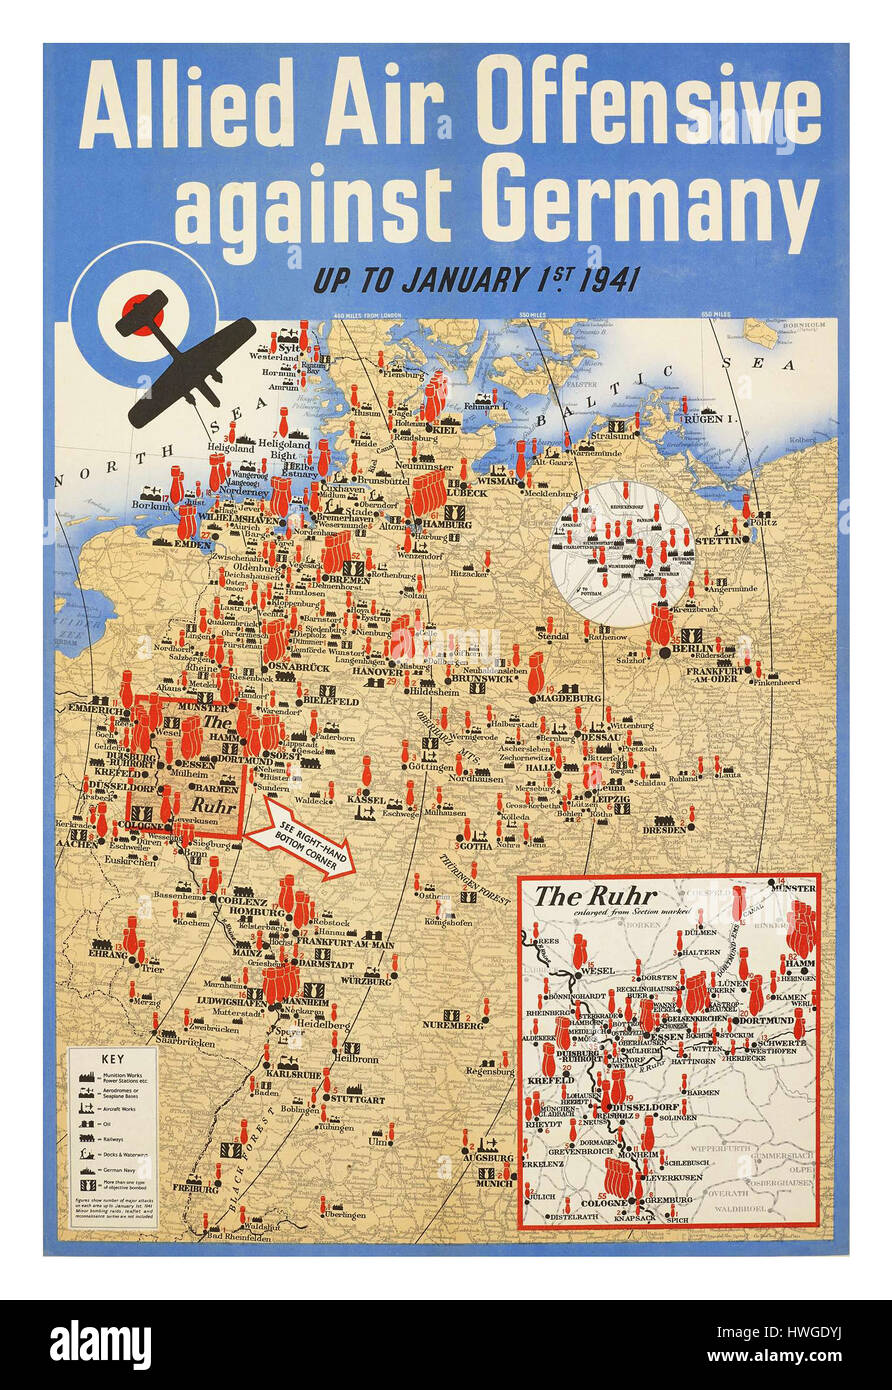 OFENSIVA AÉREA ALIADA CONTRA ALEMANIA 1941 Poster retro vintage WW2 mapa que detalla las ubicaciones de varios ataques aéreos aliados en toda Alemania durante la Segunda Guerra Mundial; la imagen ilustra el mapa de Alemania con varias ubicaciones resaltadas en rojo y negro símbolos que indican objetivos y niveles de intensidad de los diversos bombardeos del Reino Unido Foto de stock